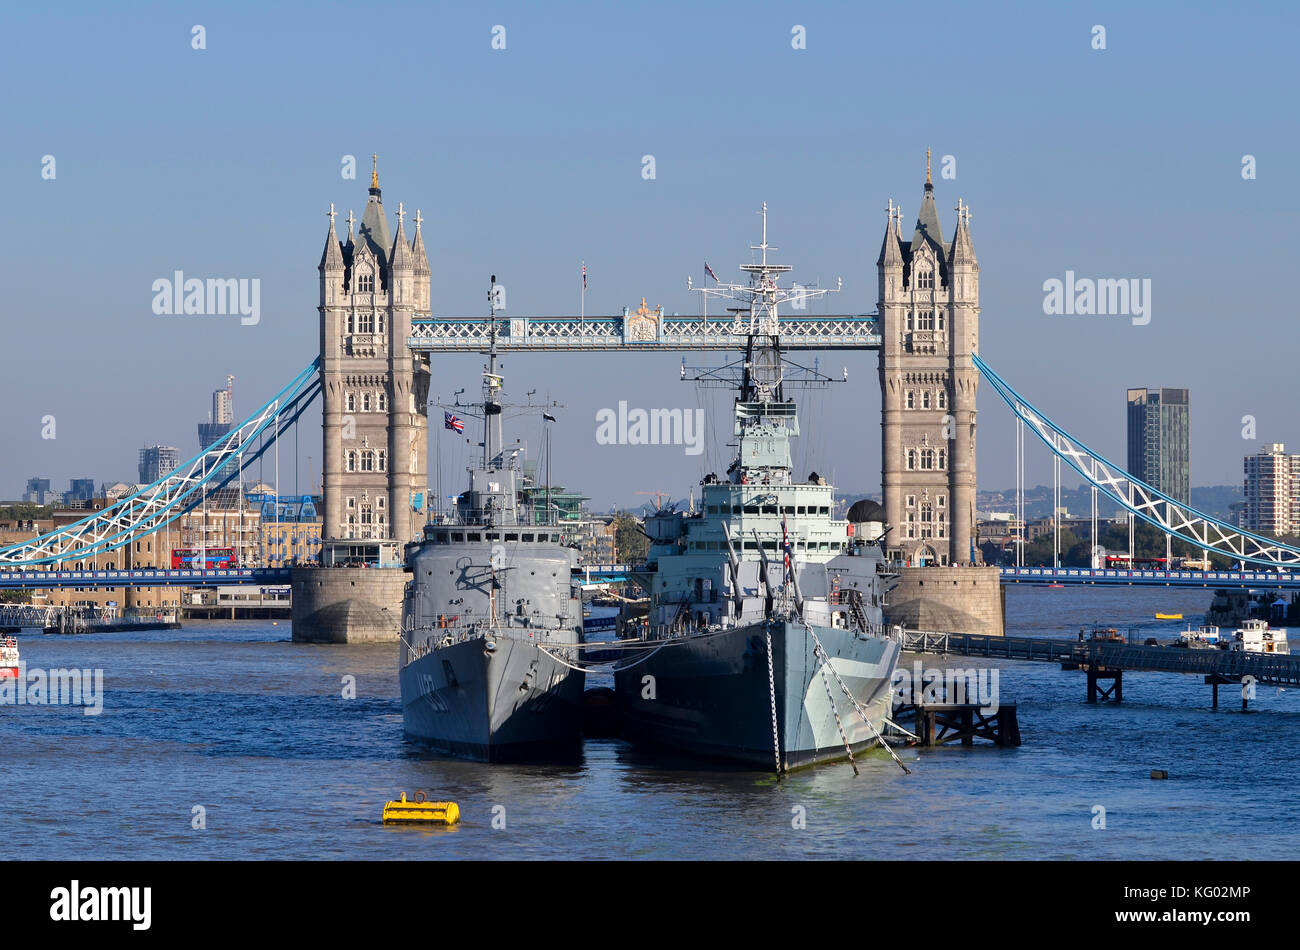 Le HMS Belfast et Marine brésilienne U27 navire de formation avec le Tower Bridge derrière, Tamise, Pool of London, Londres, Royaume-Uni. Banque D'Images